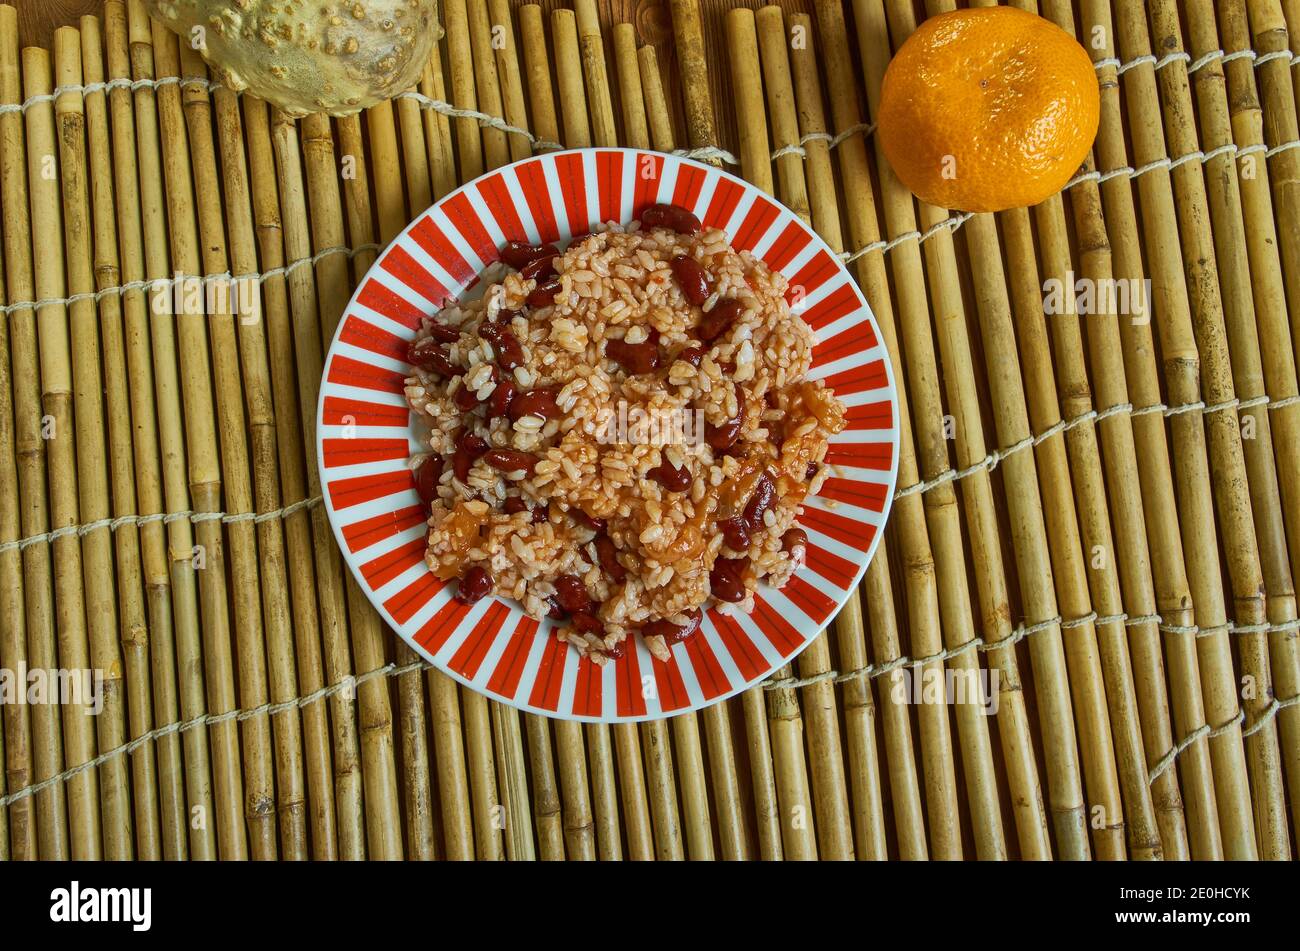 Arroz junto - piatto portoricano, fatto con riso, fagioli e carne Foto Stock